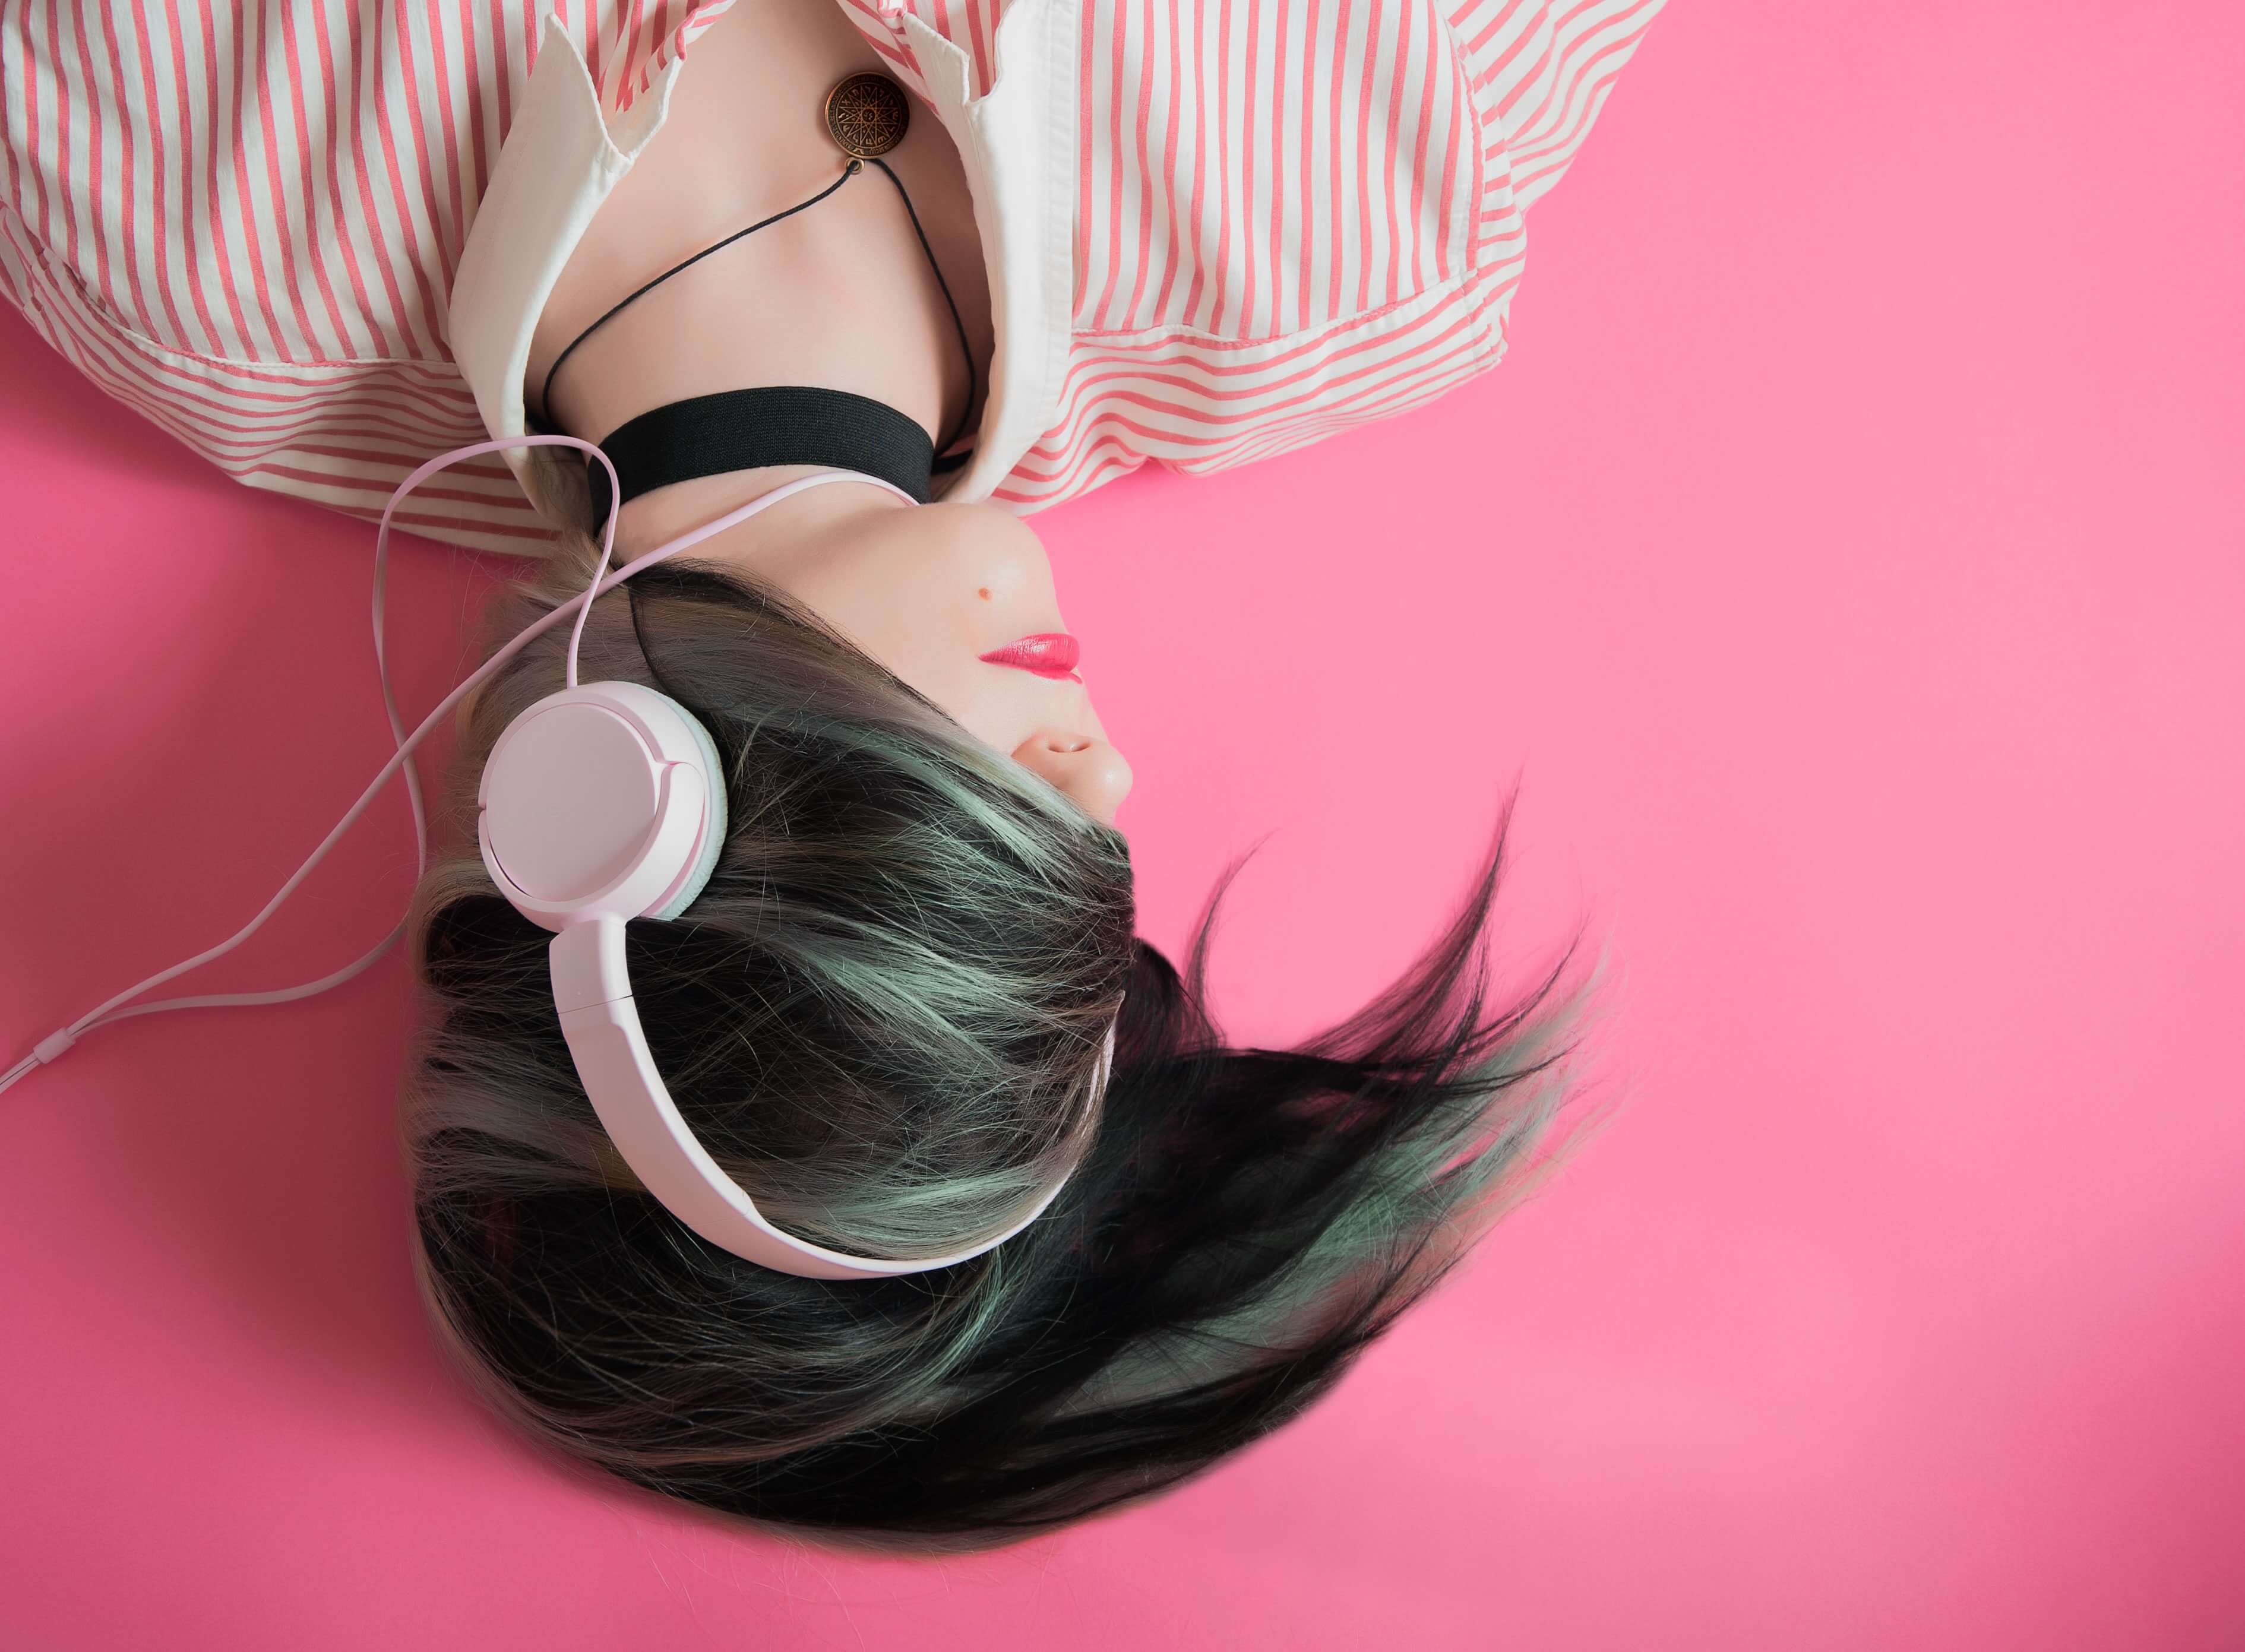 10 เพลงที่ช่วยให้นอนหลับ ฟังฟิน ๆ ก็หลับสบายได้